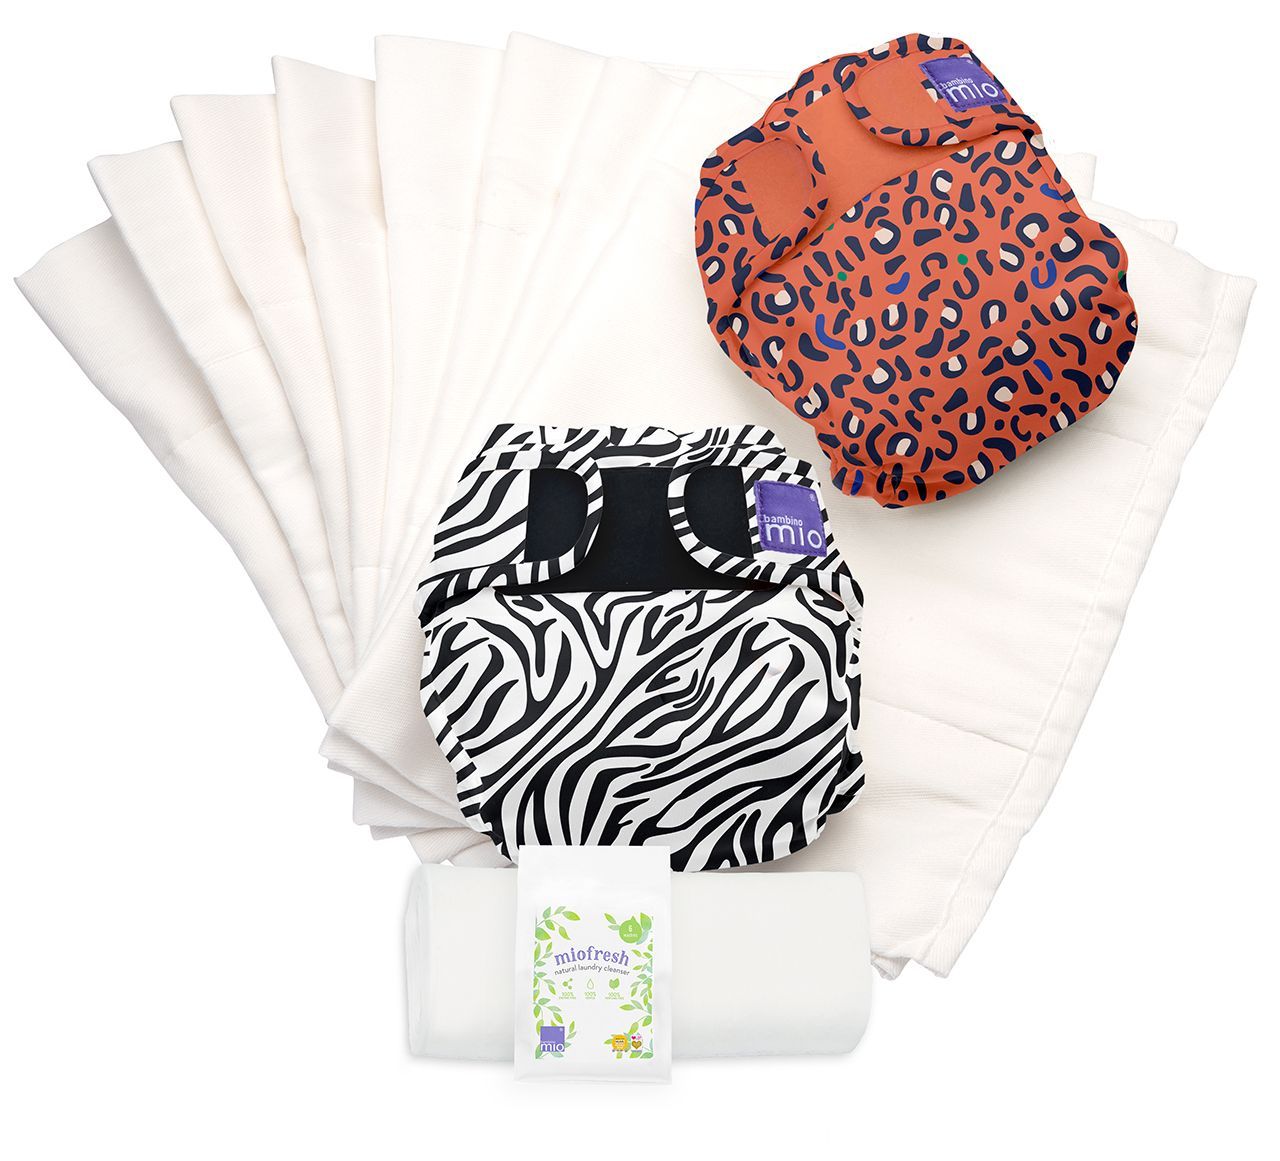 Bambino Mio| Mioduo Reusable Nappy Set Safari Celebration | Earthlets.com |  | reusable nappies